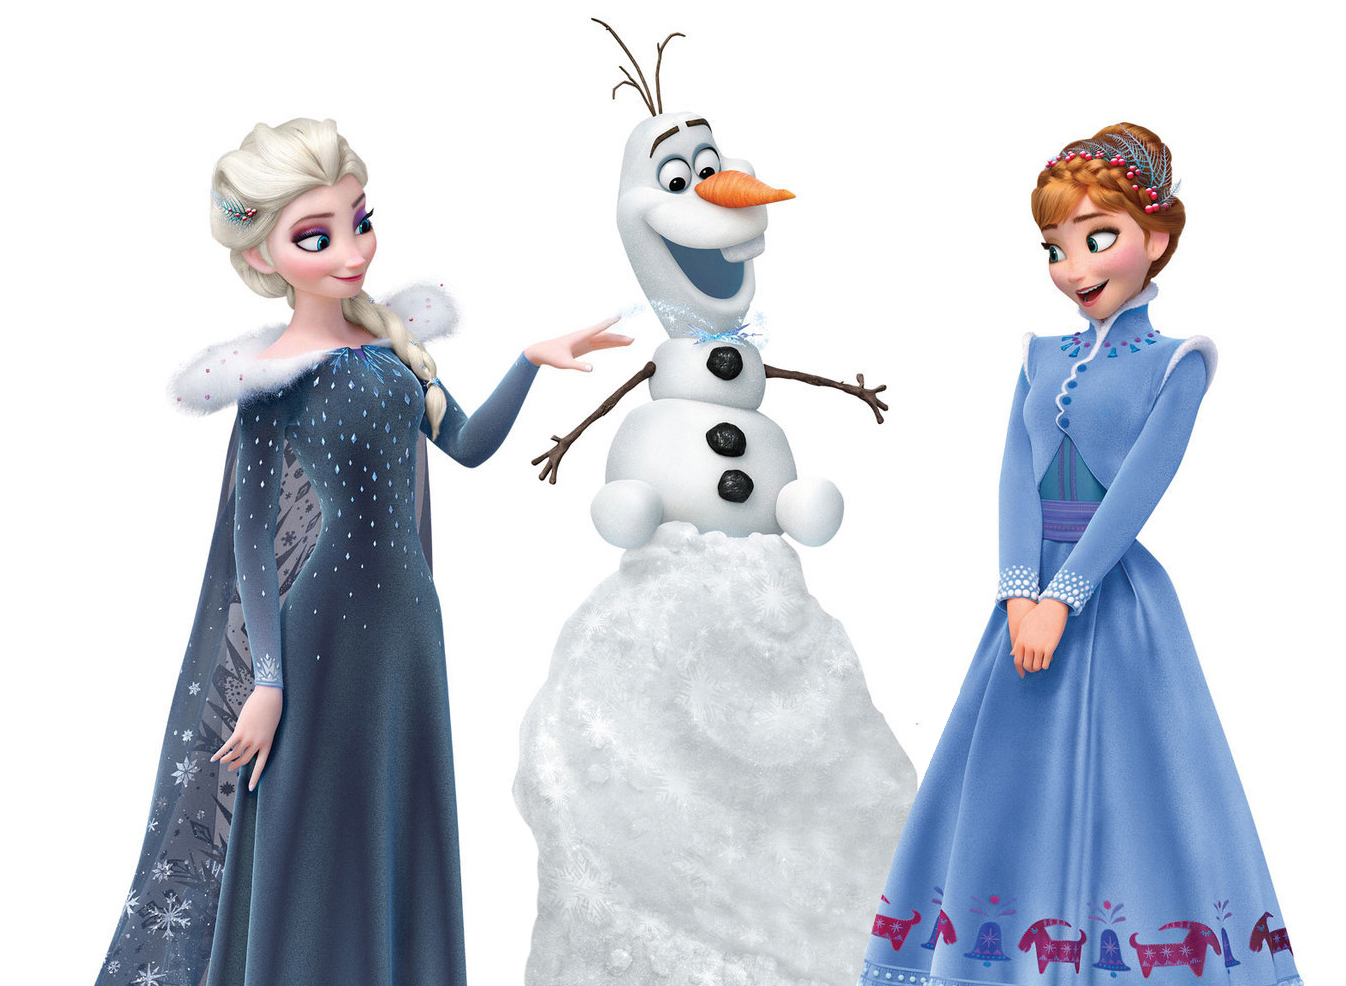 Olafs Frozen Adventure Wallpapers